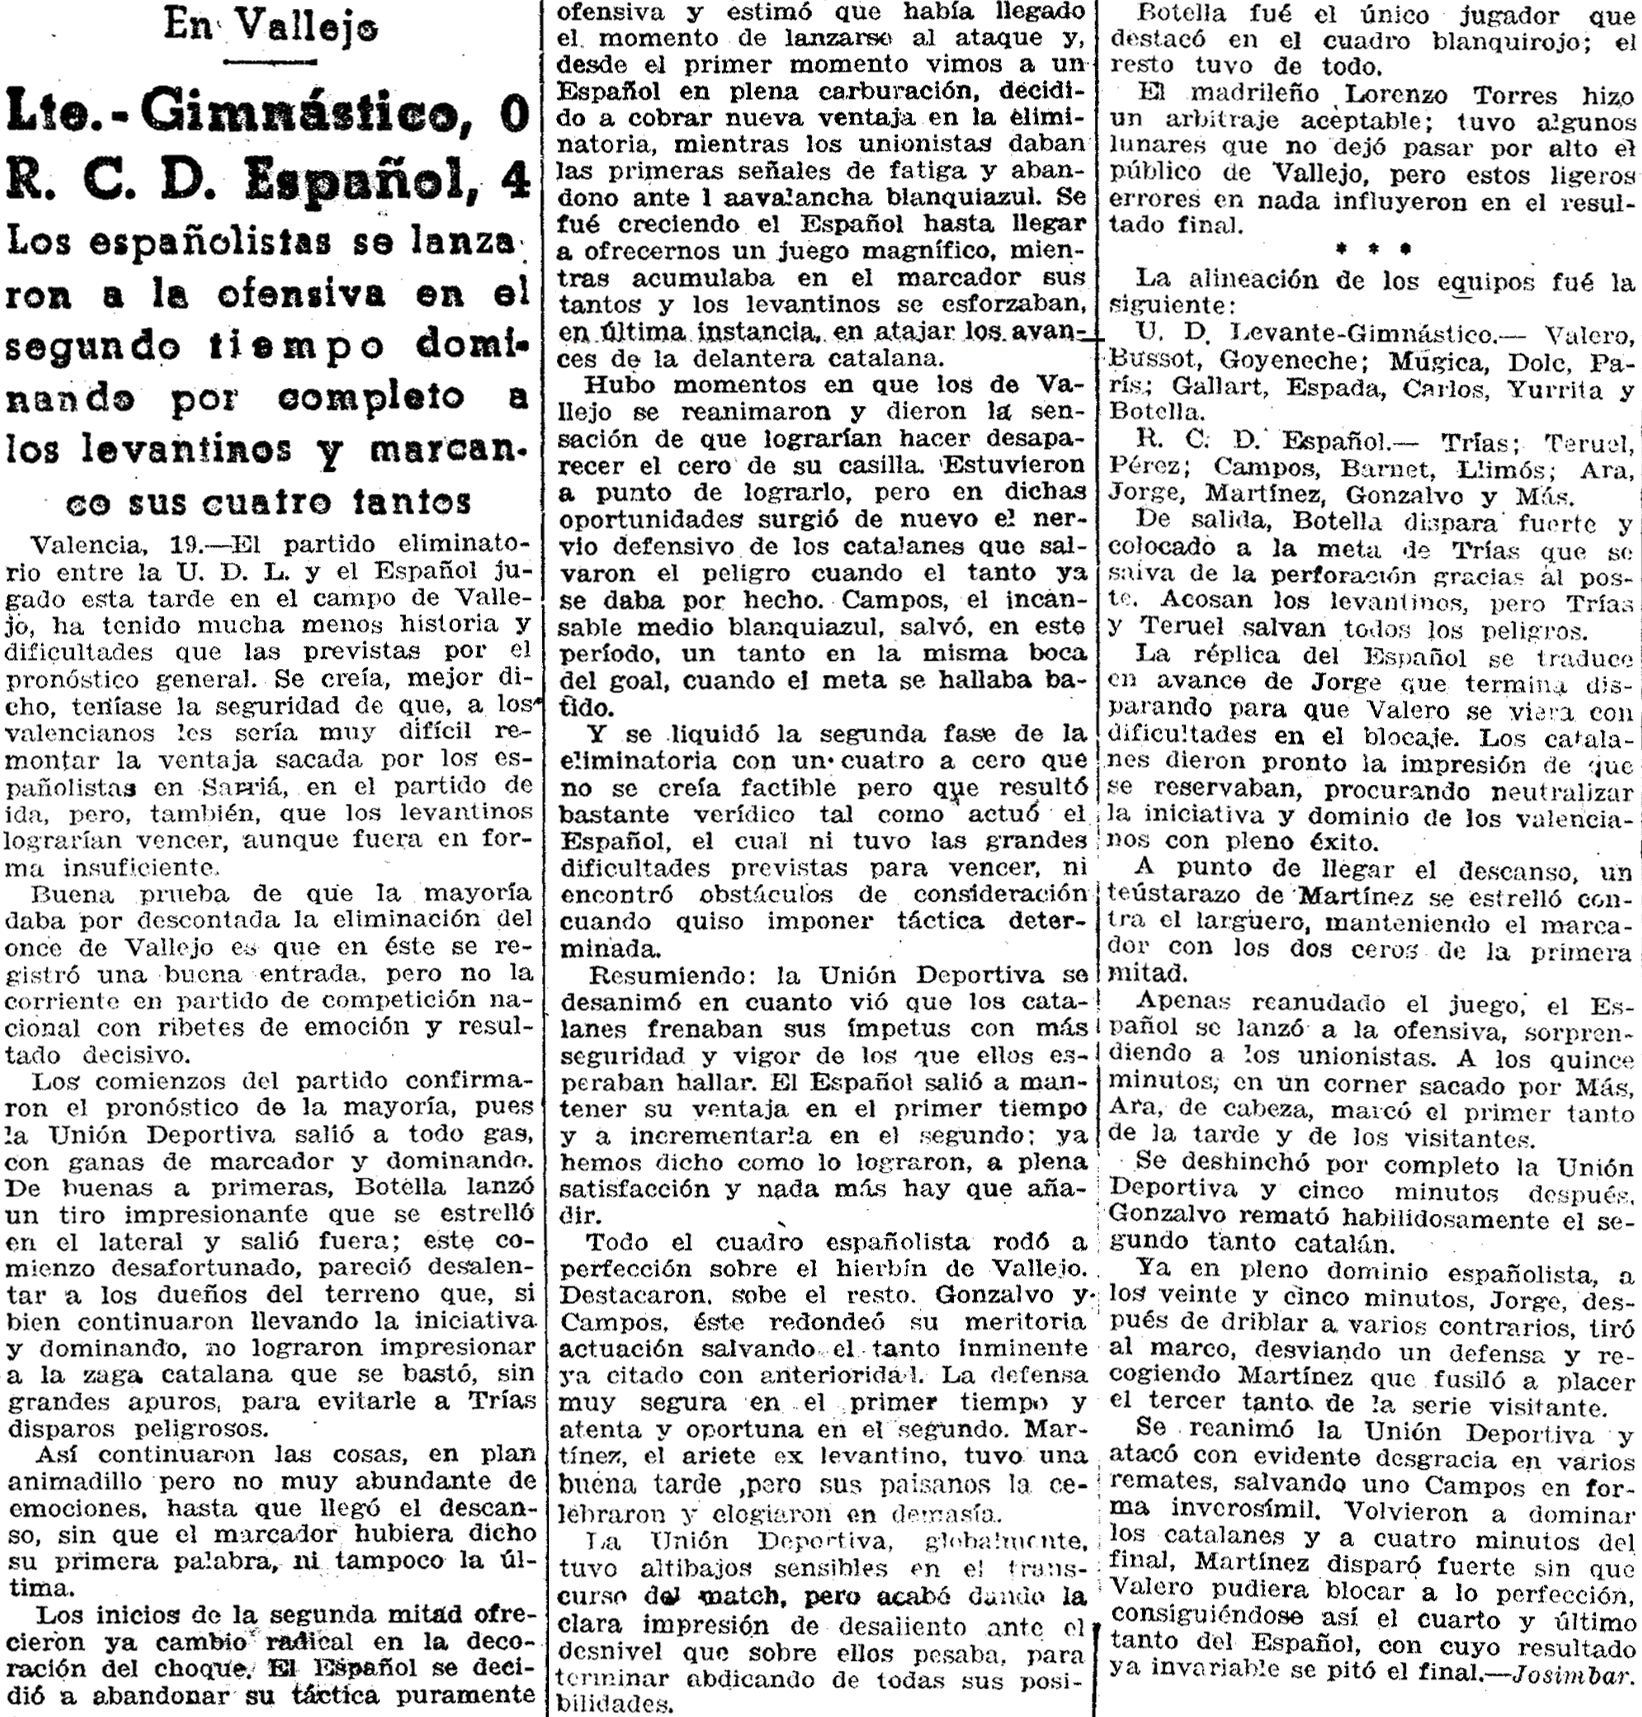 1940.05.19 (19 мая 1940), Леванте - Эспаньол, 0-4 (2).png